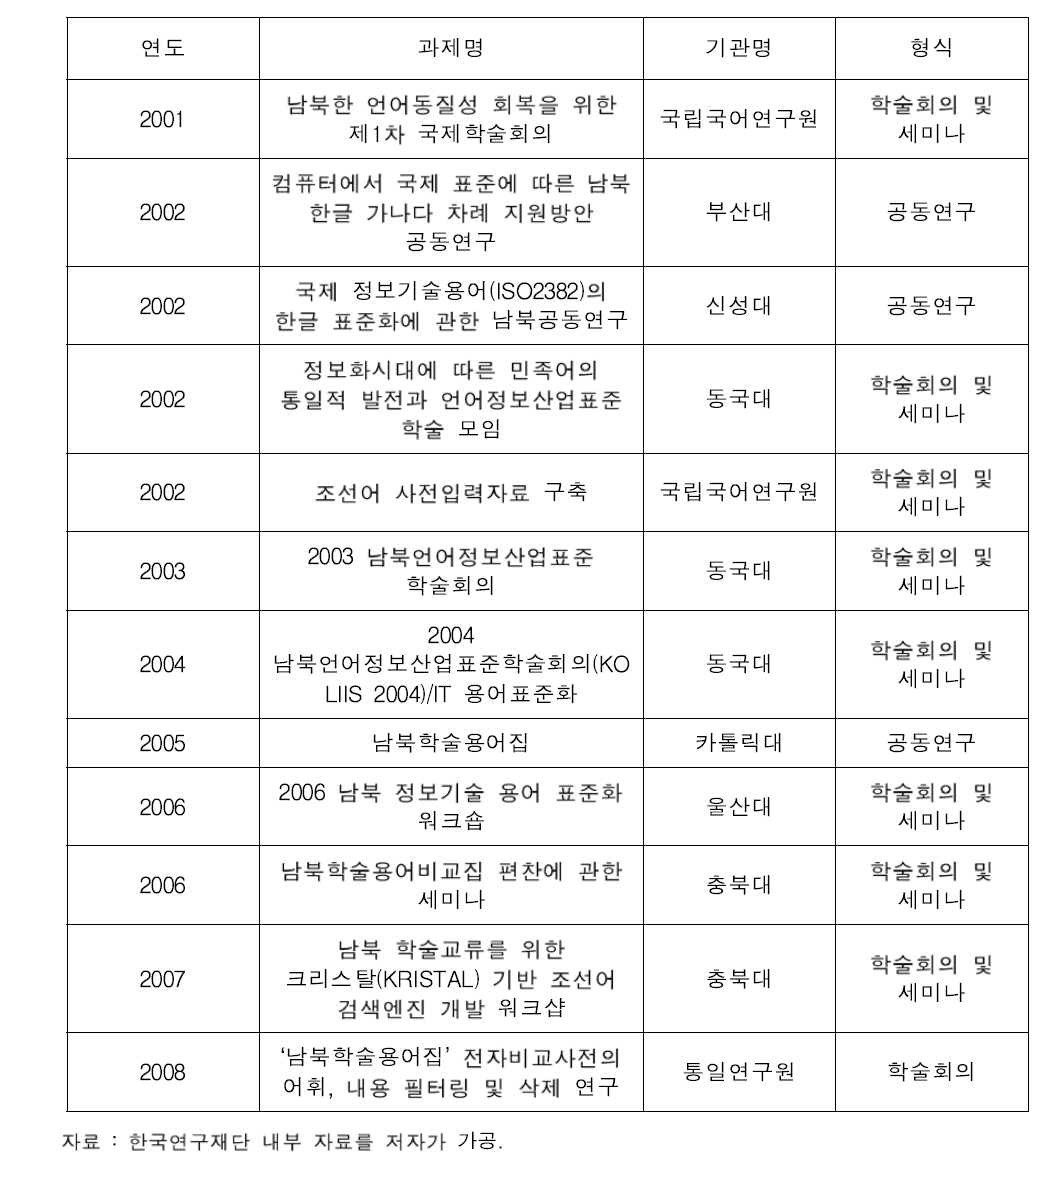 한국연구재단의 남북한 기술용어 관련 사업들